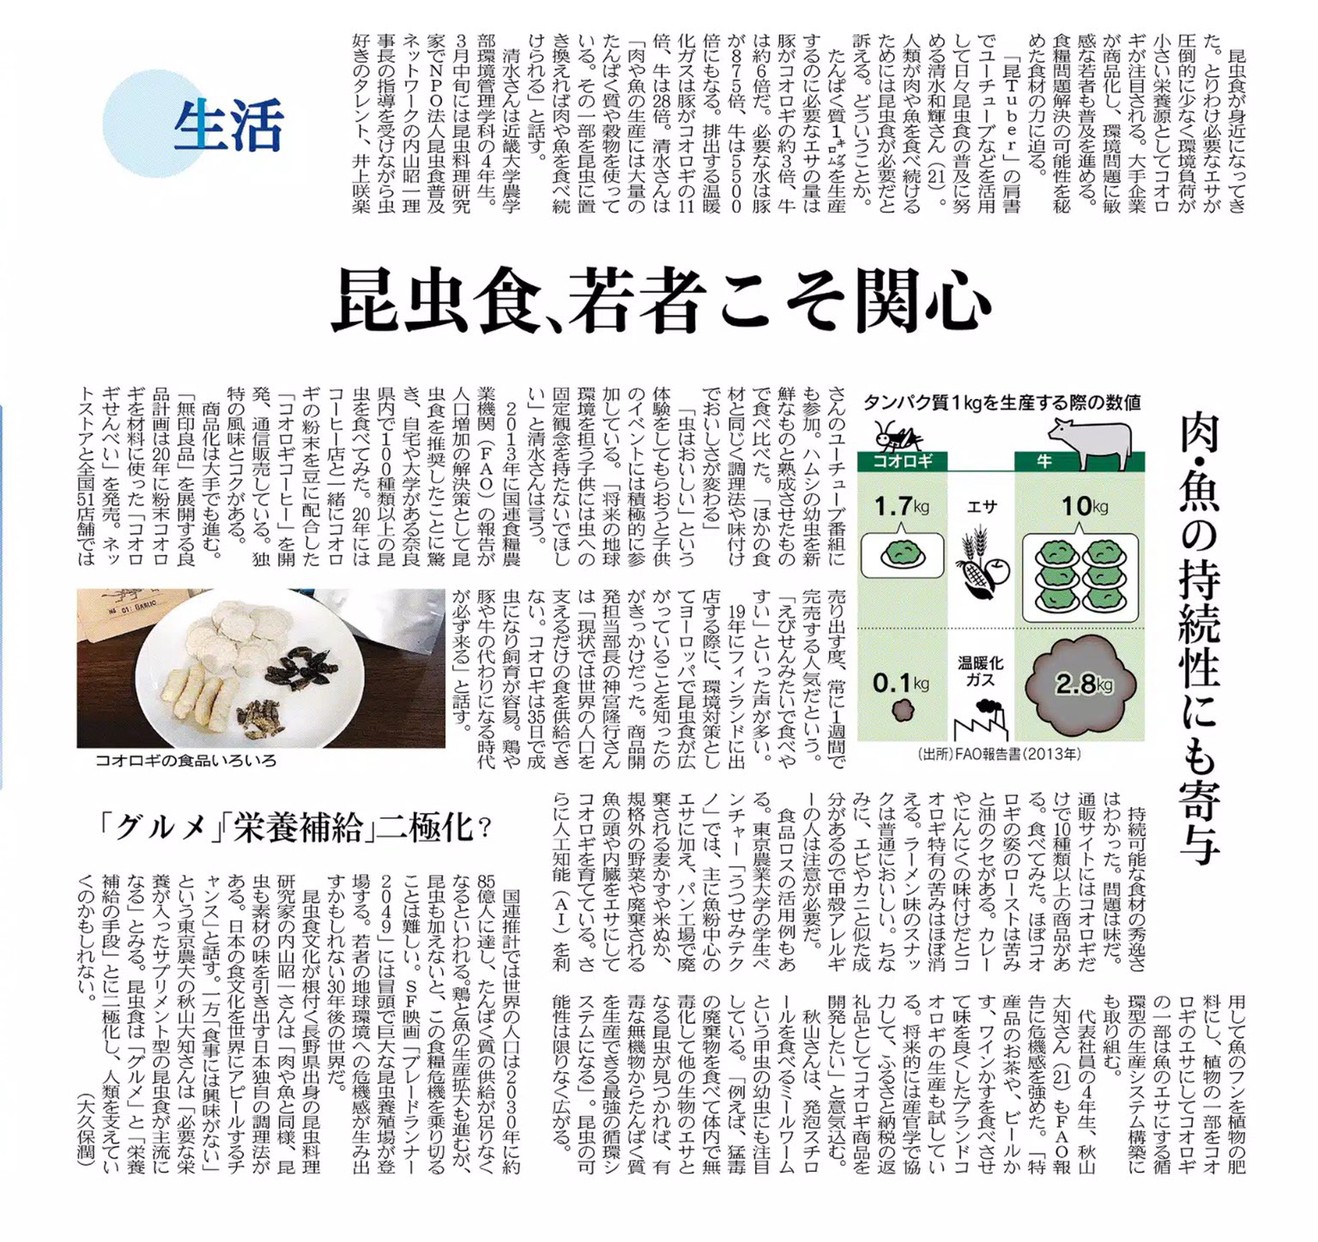 うつせみテクノ日本経済新聞に掲載されました